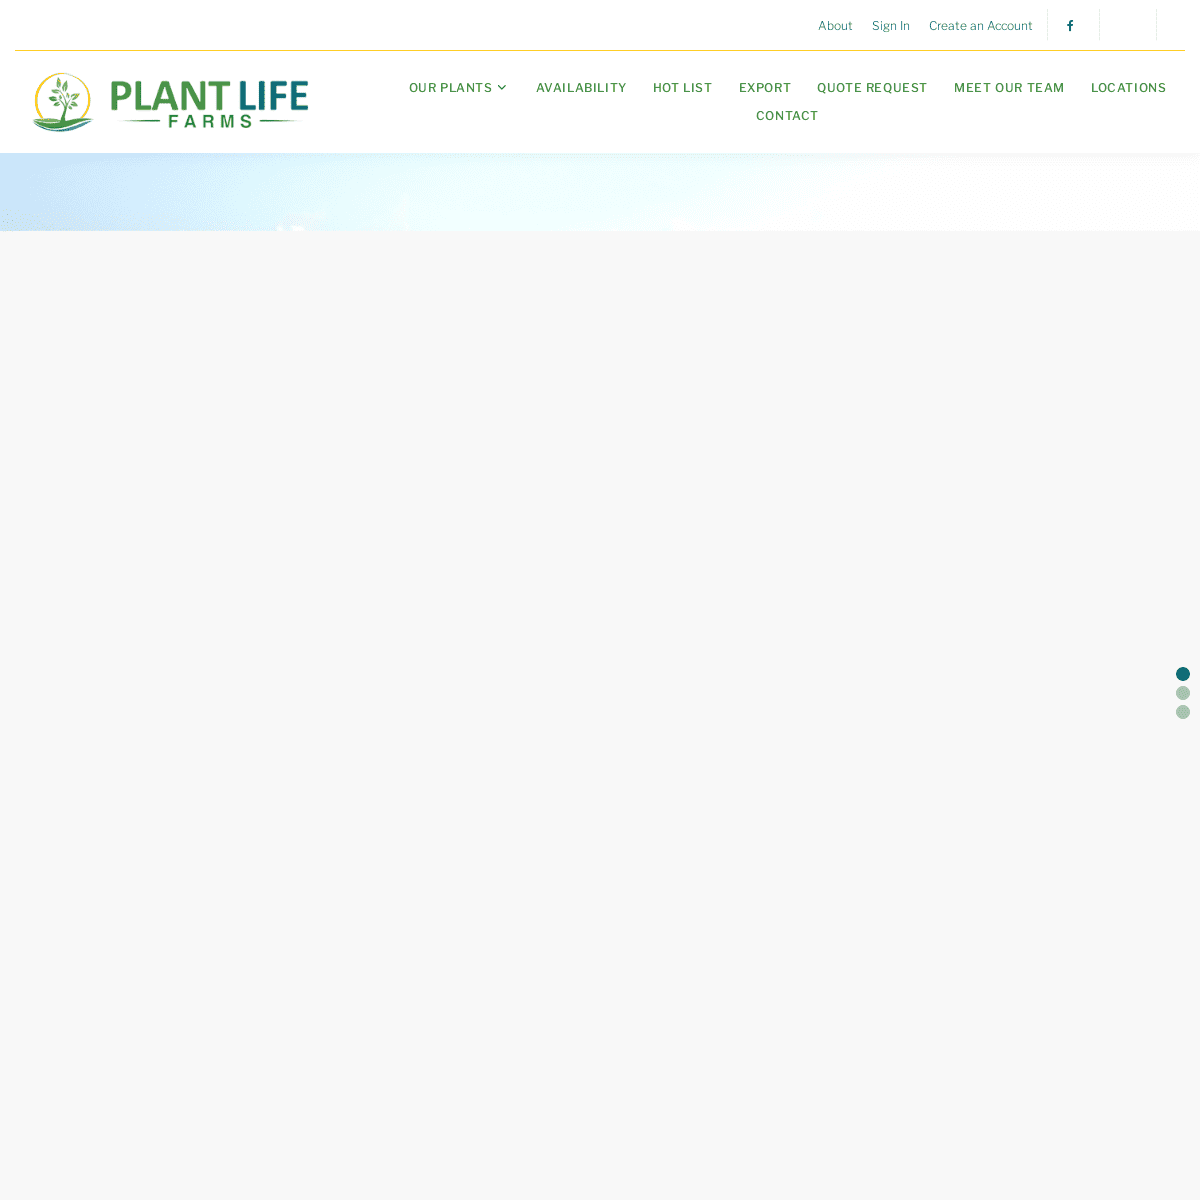 A complete backup of https://plantlifefarms.com